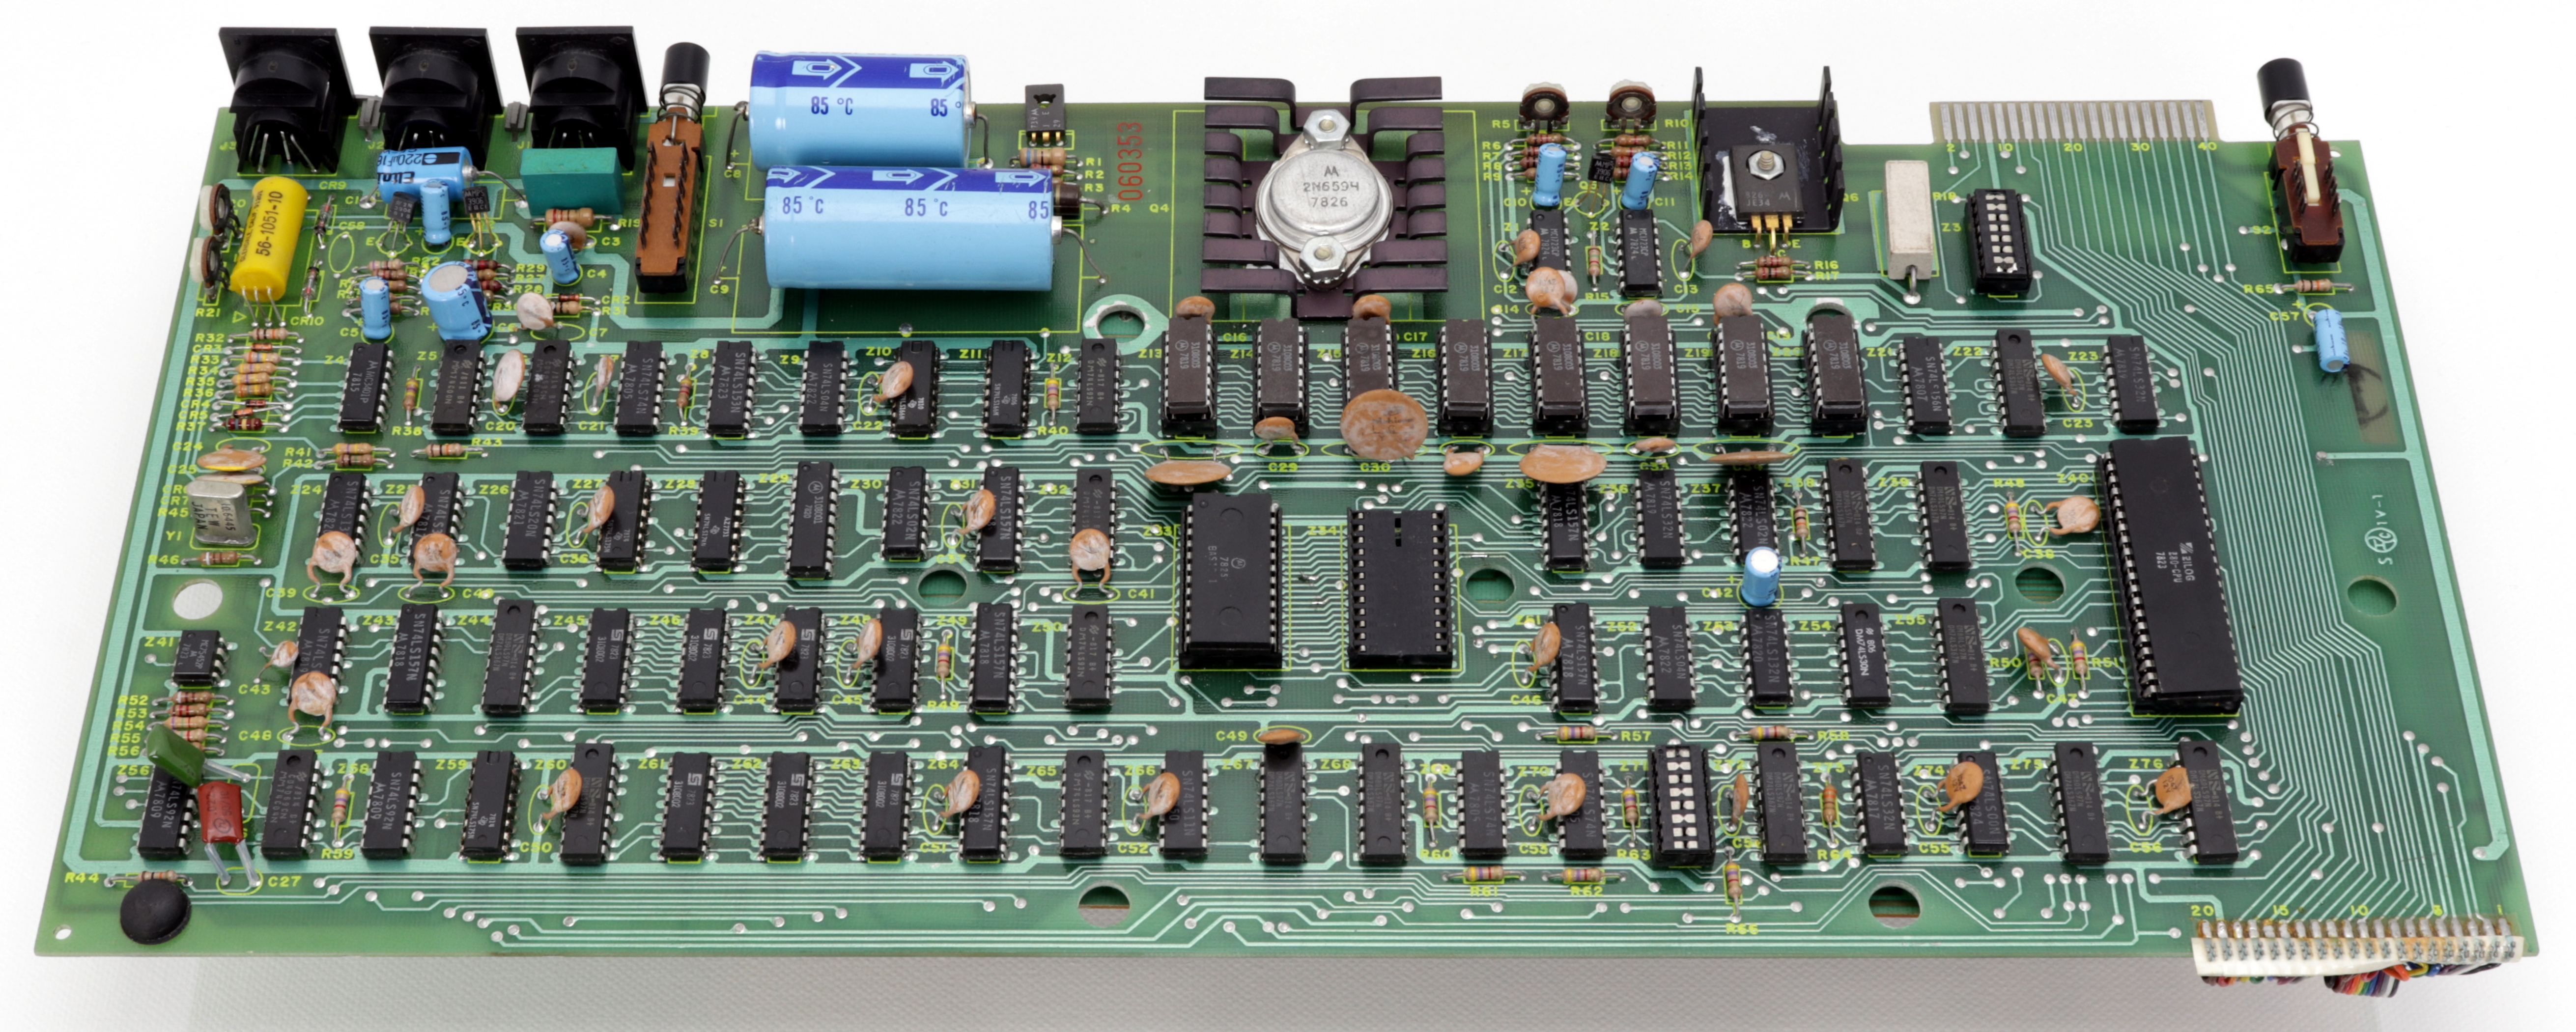 TRS-80 PCB